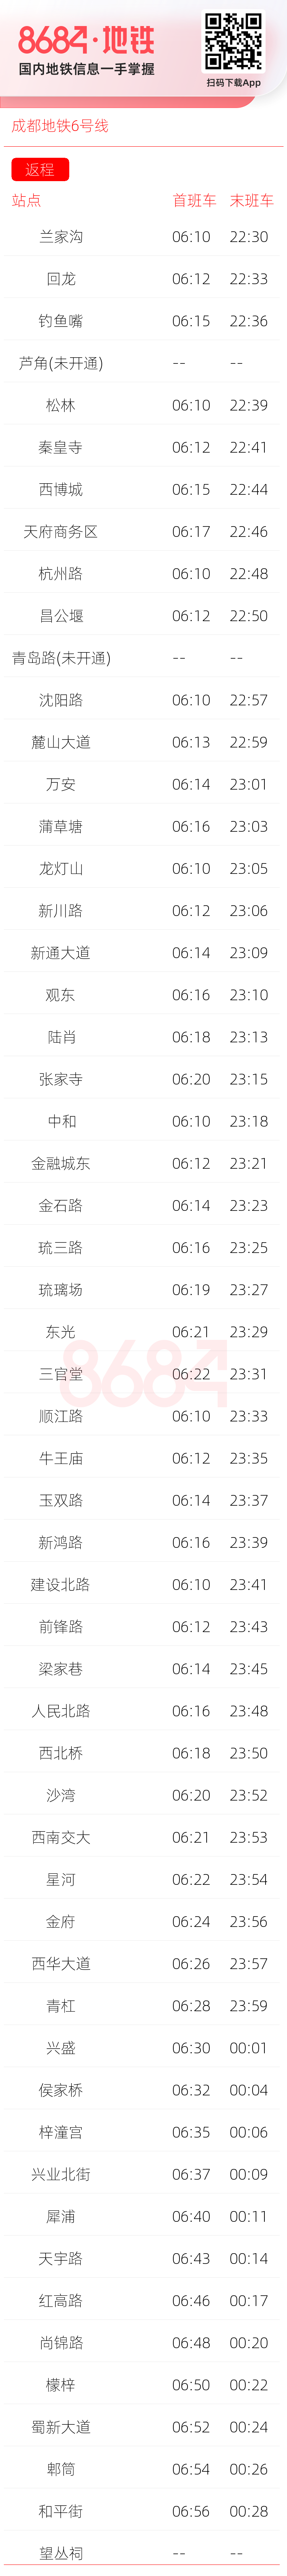 成都地铁6号线运营时间表